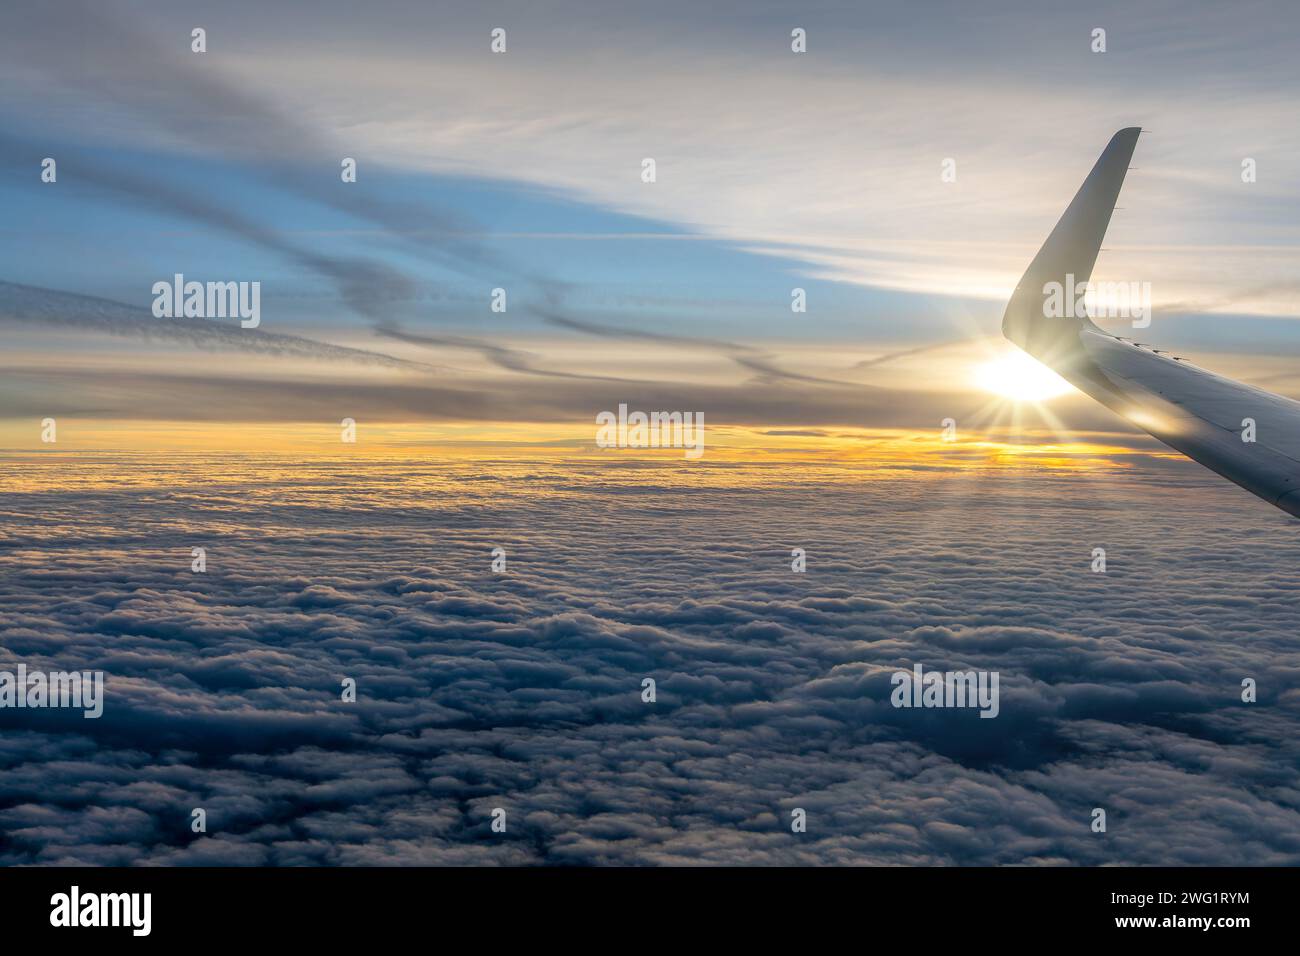 Vista dalla finestra di un aereo su un mare di nuvole al tramonto con l'ala dell'aereo Foto Stock